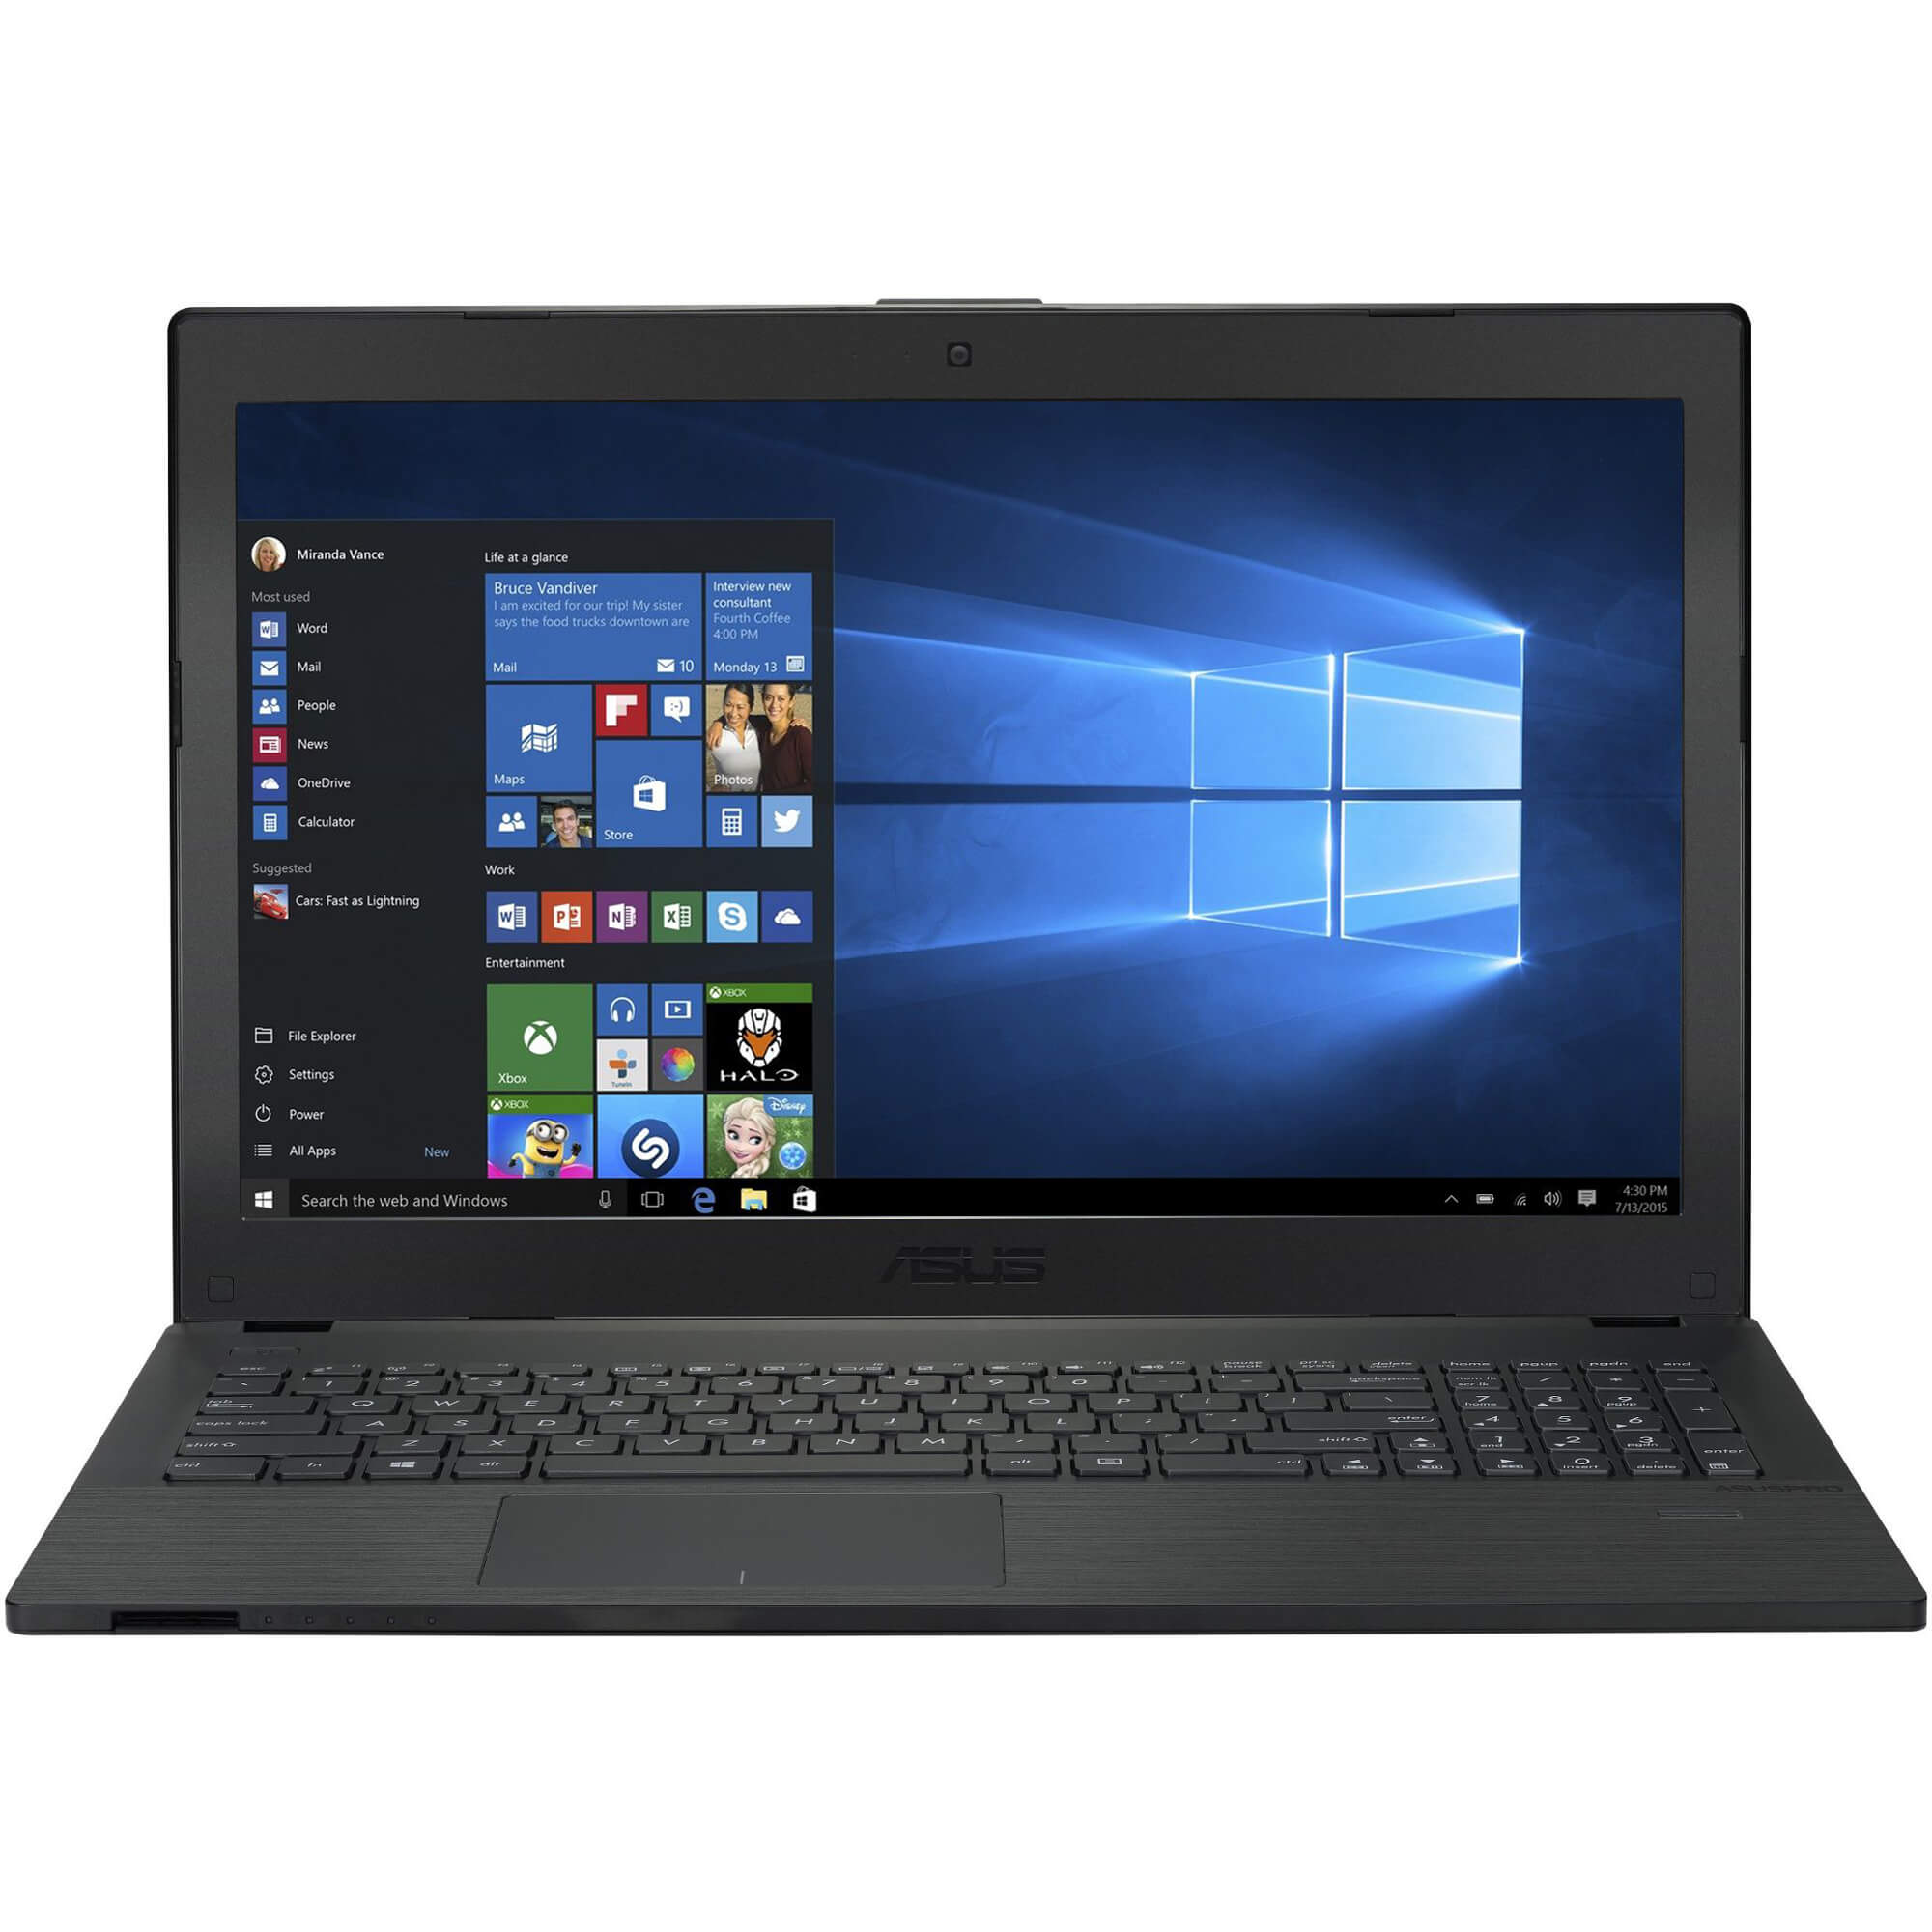  Laptop ASUS P2520LA, Intel Core i3-5005U, 4GB DRR3, HDD 500GB, Intel HD Graphics, Windows 10 Pro 